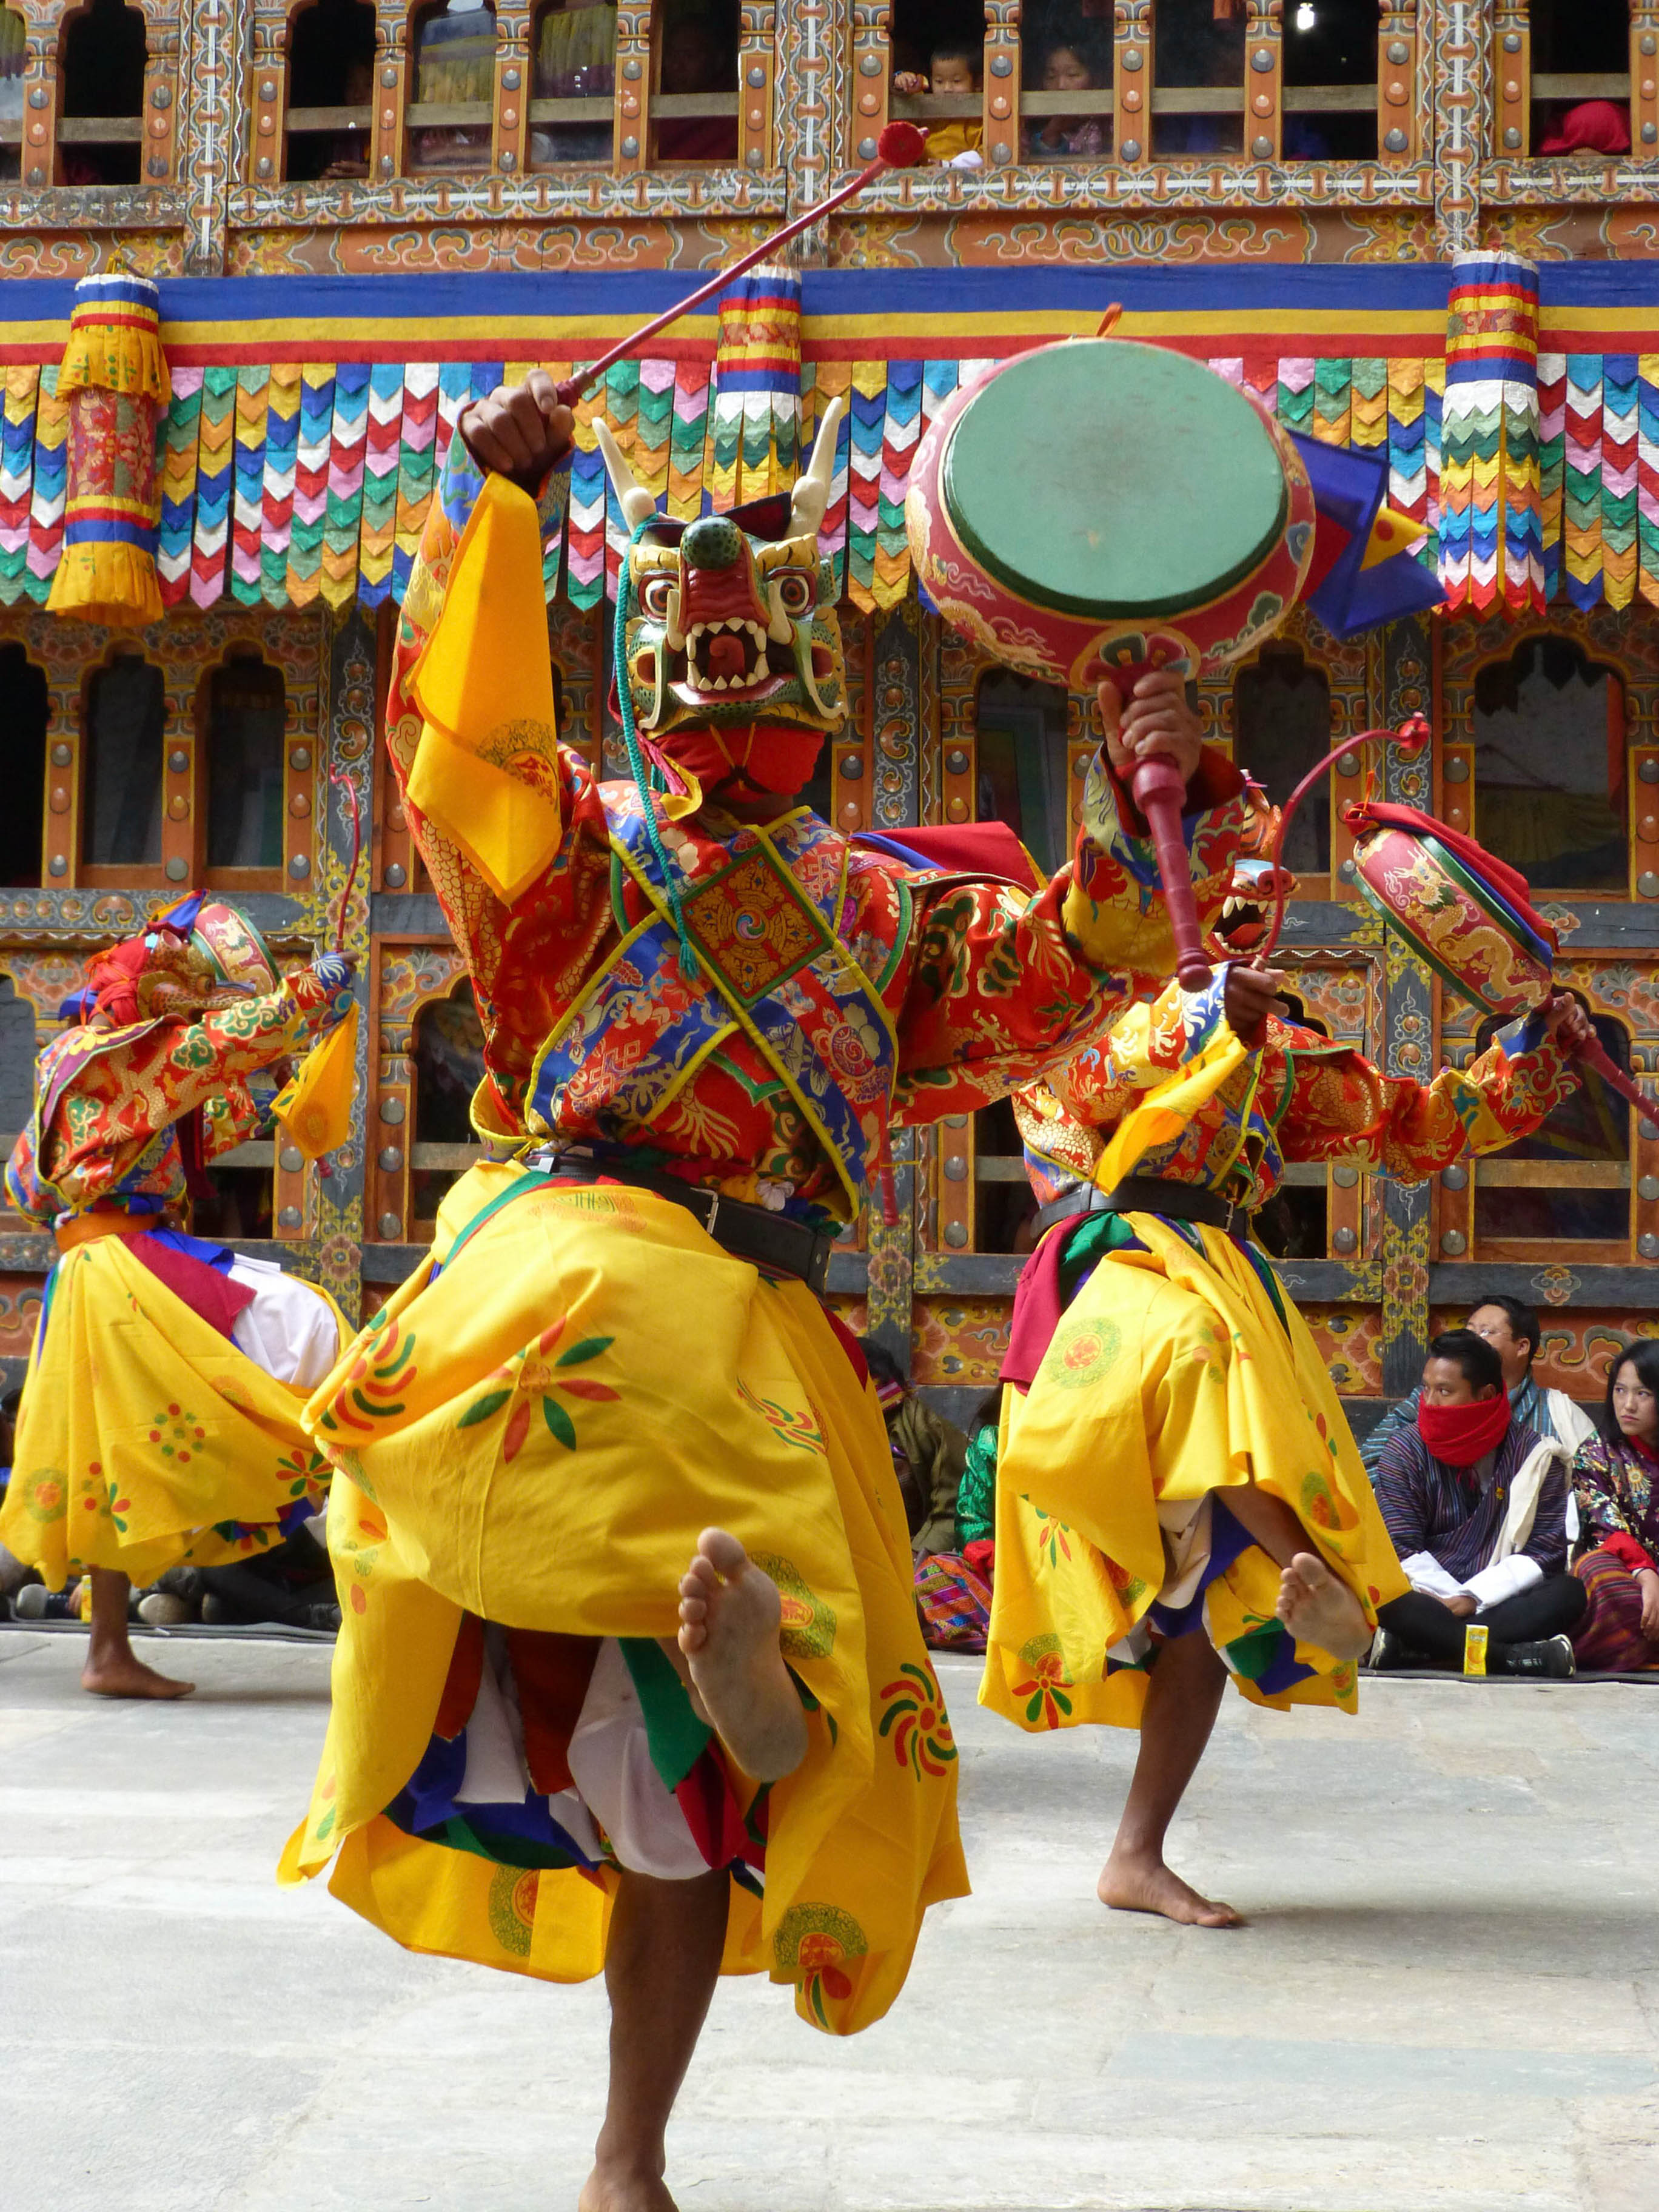 La danse des chapeaux noirs sous le regard des villageois, venus nombreux participer à des jours de fêtes - Triptyque himalayen